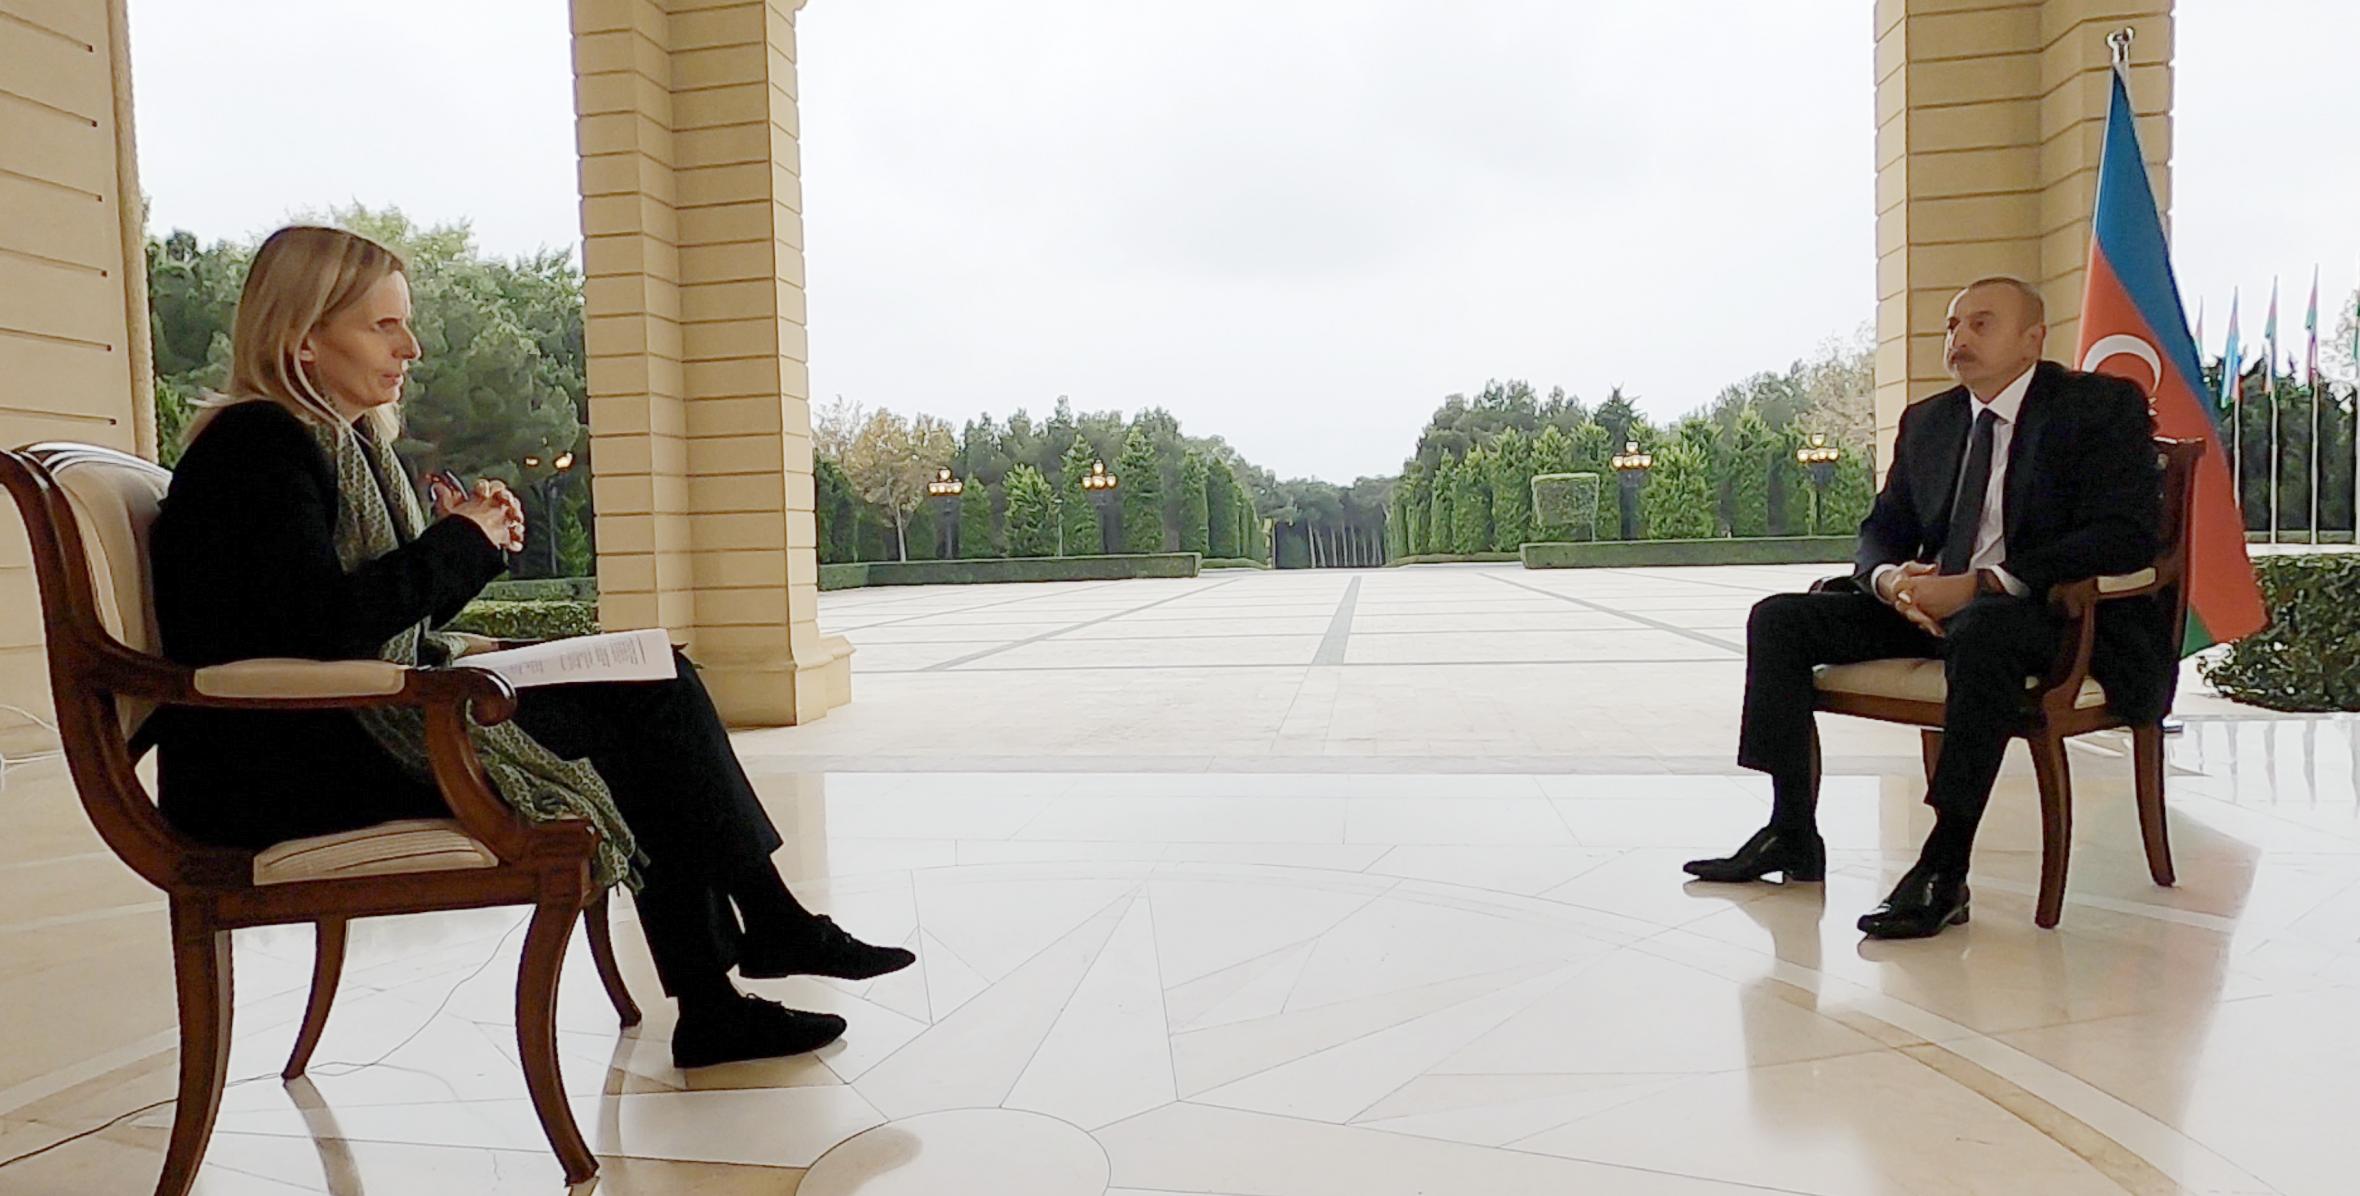 Ilham Aliyev was interviewed by BBC News